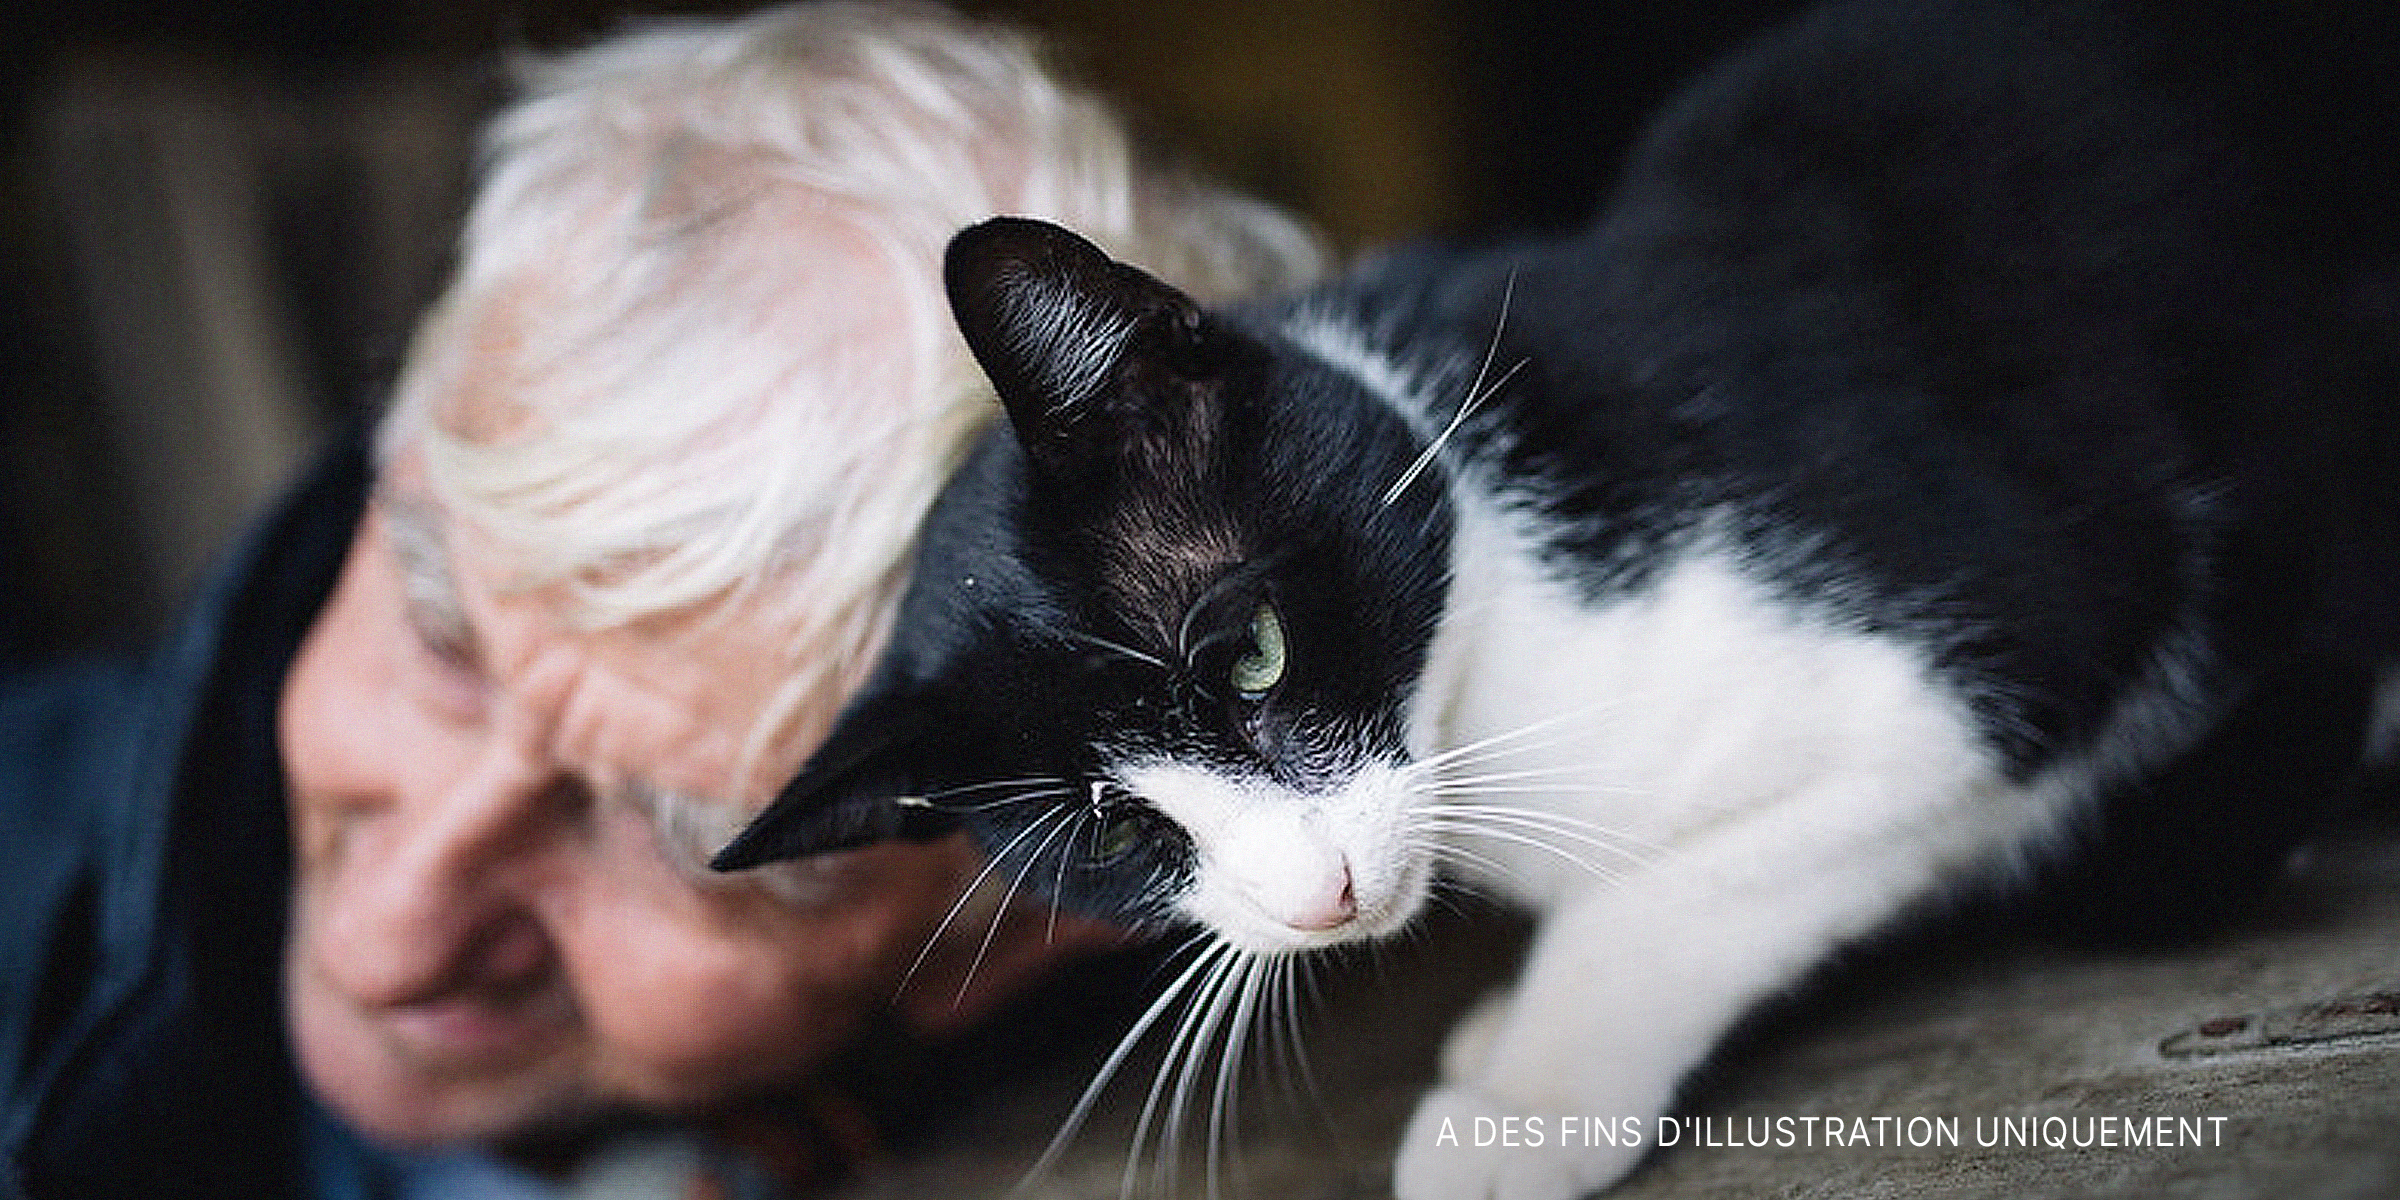 Gros plan d'un chat jouant avec un vieil homme | Source : Flickr.com/shixart1985 (CC BY 2.0)